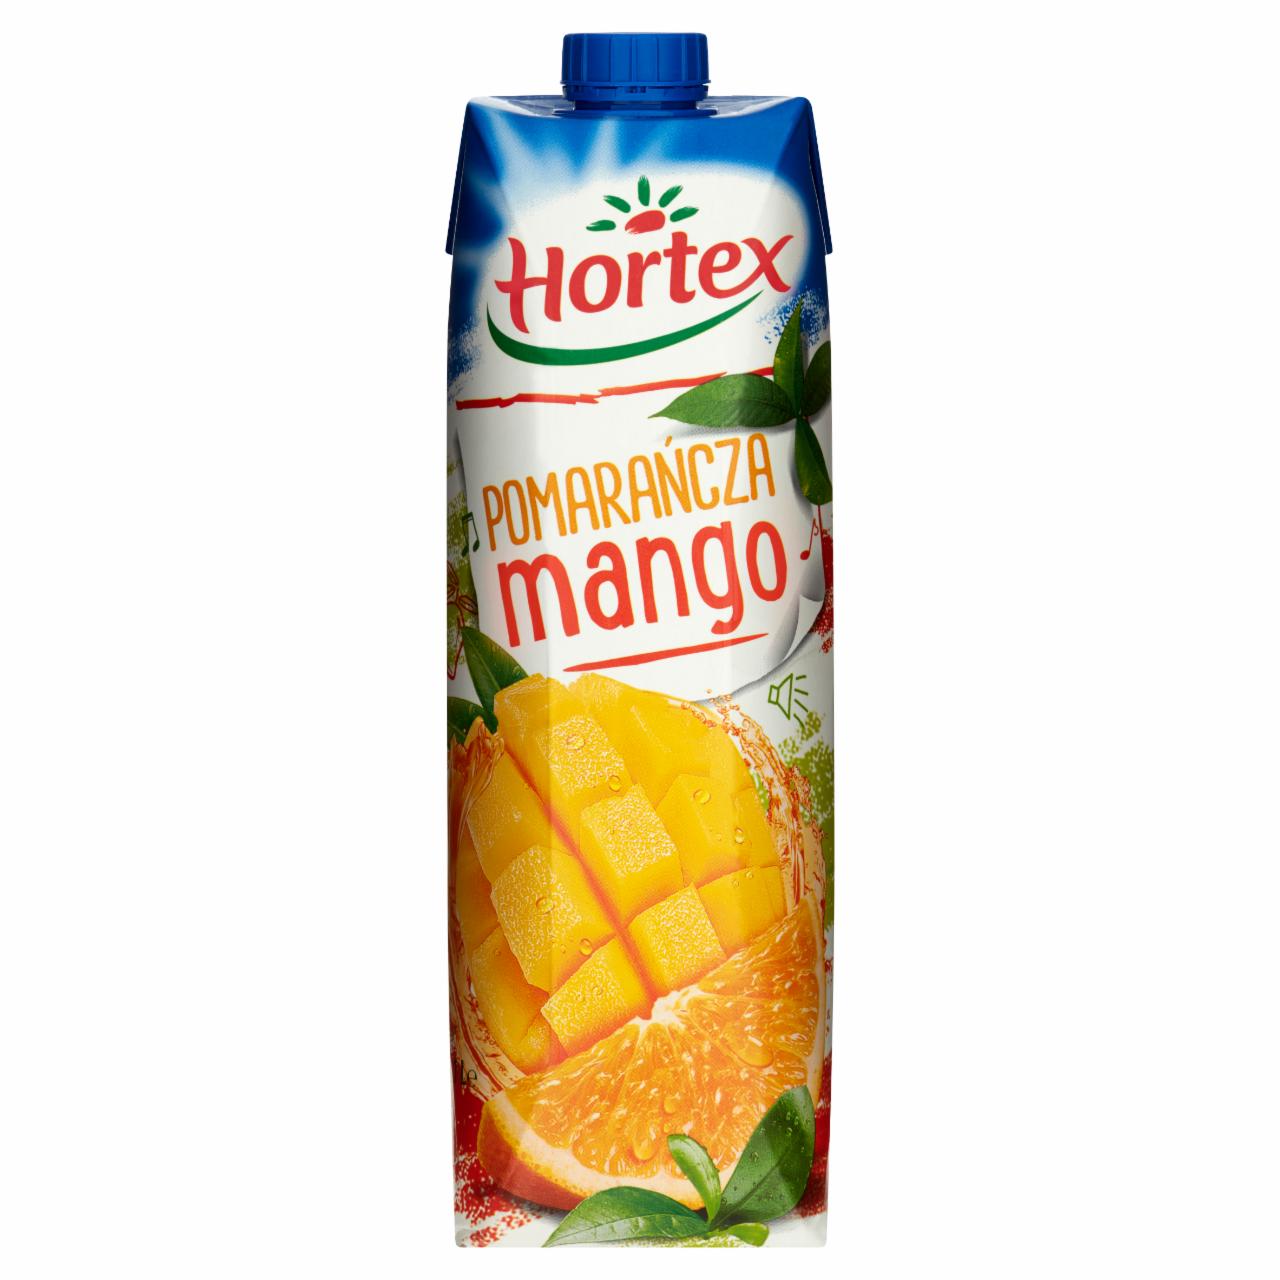 Zdjęcia - Hortex Napój pomarańcza mango 1 l